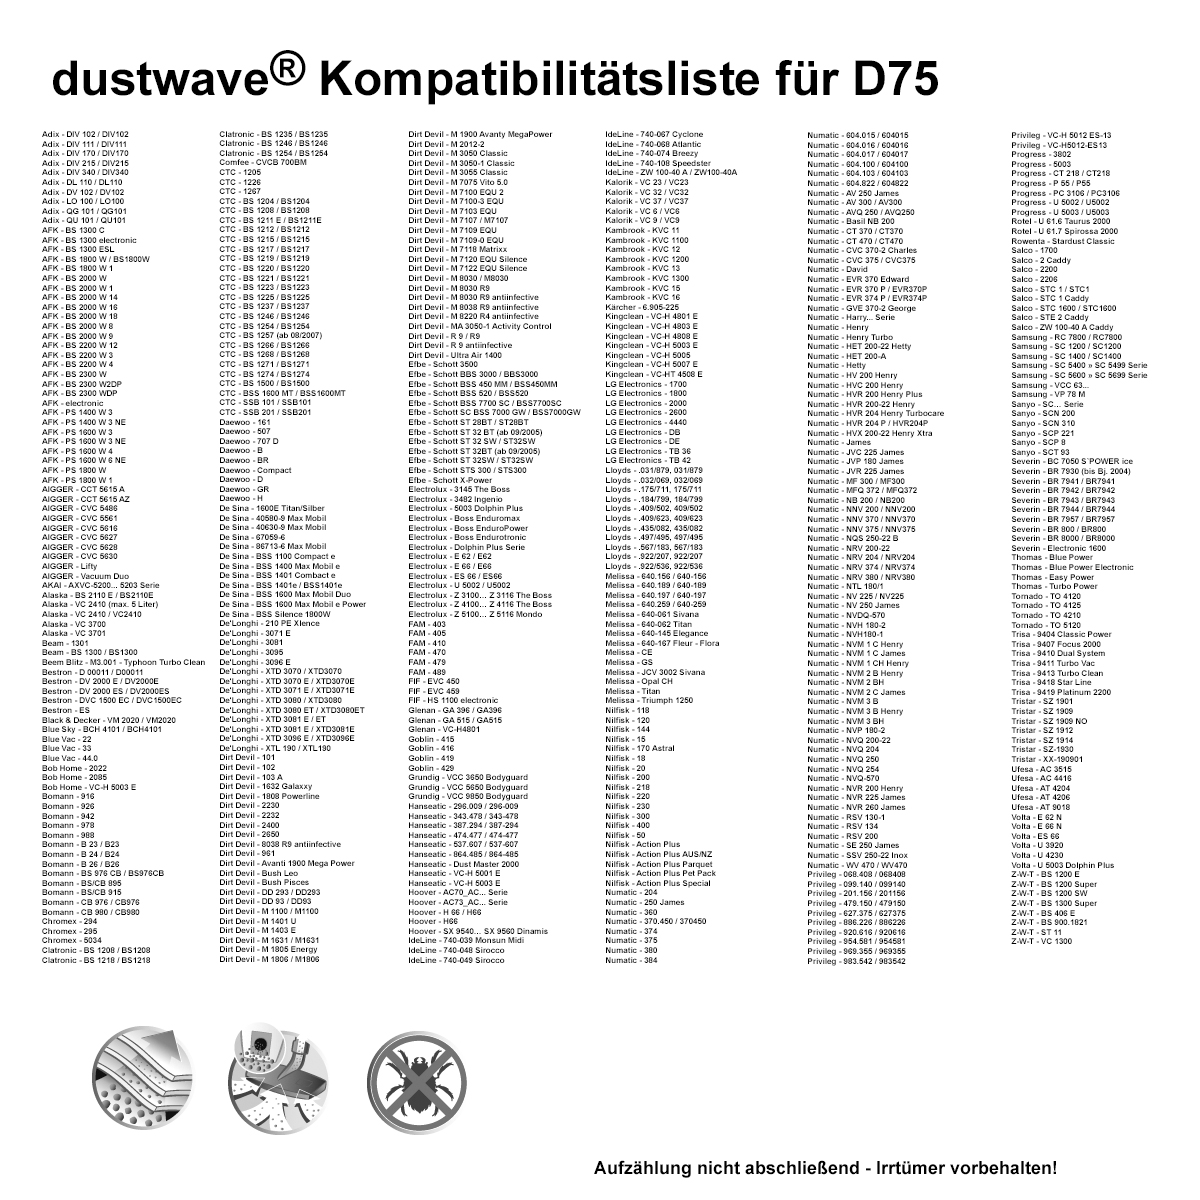 Dustwave® 20 Staubsaugerbeutel für Hoover SX9720 011 - hocheffizient, mehrlagiges Mikrovlies mit Hygieneverschluss - Made in Germany